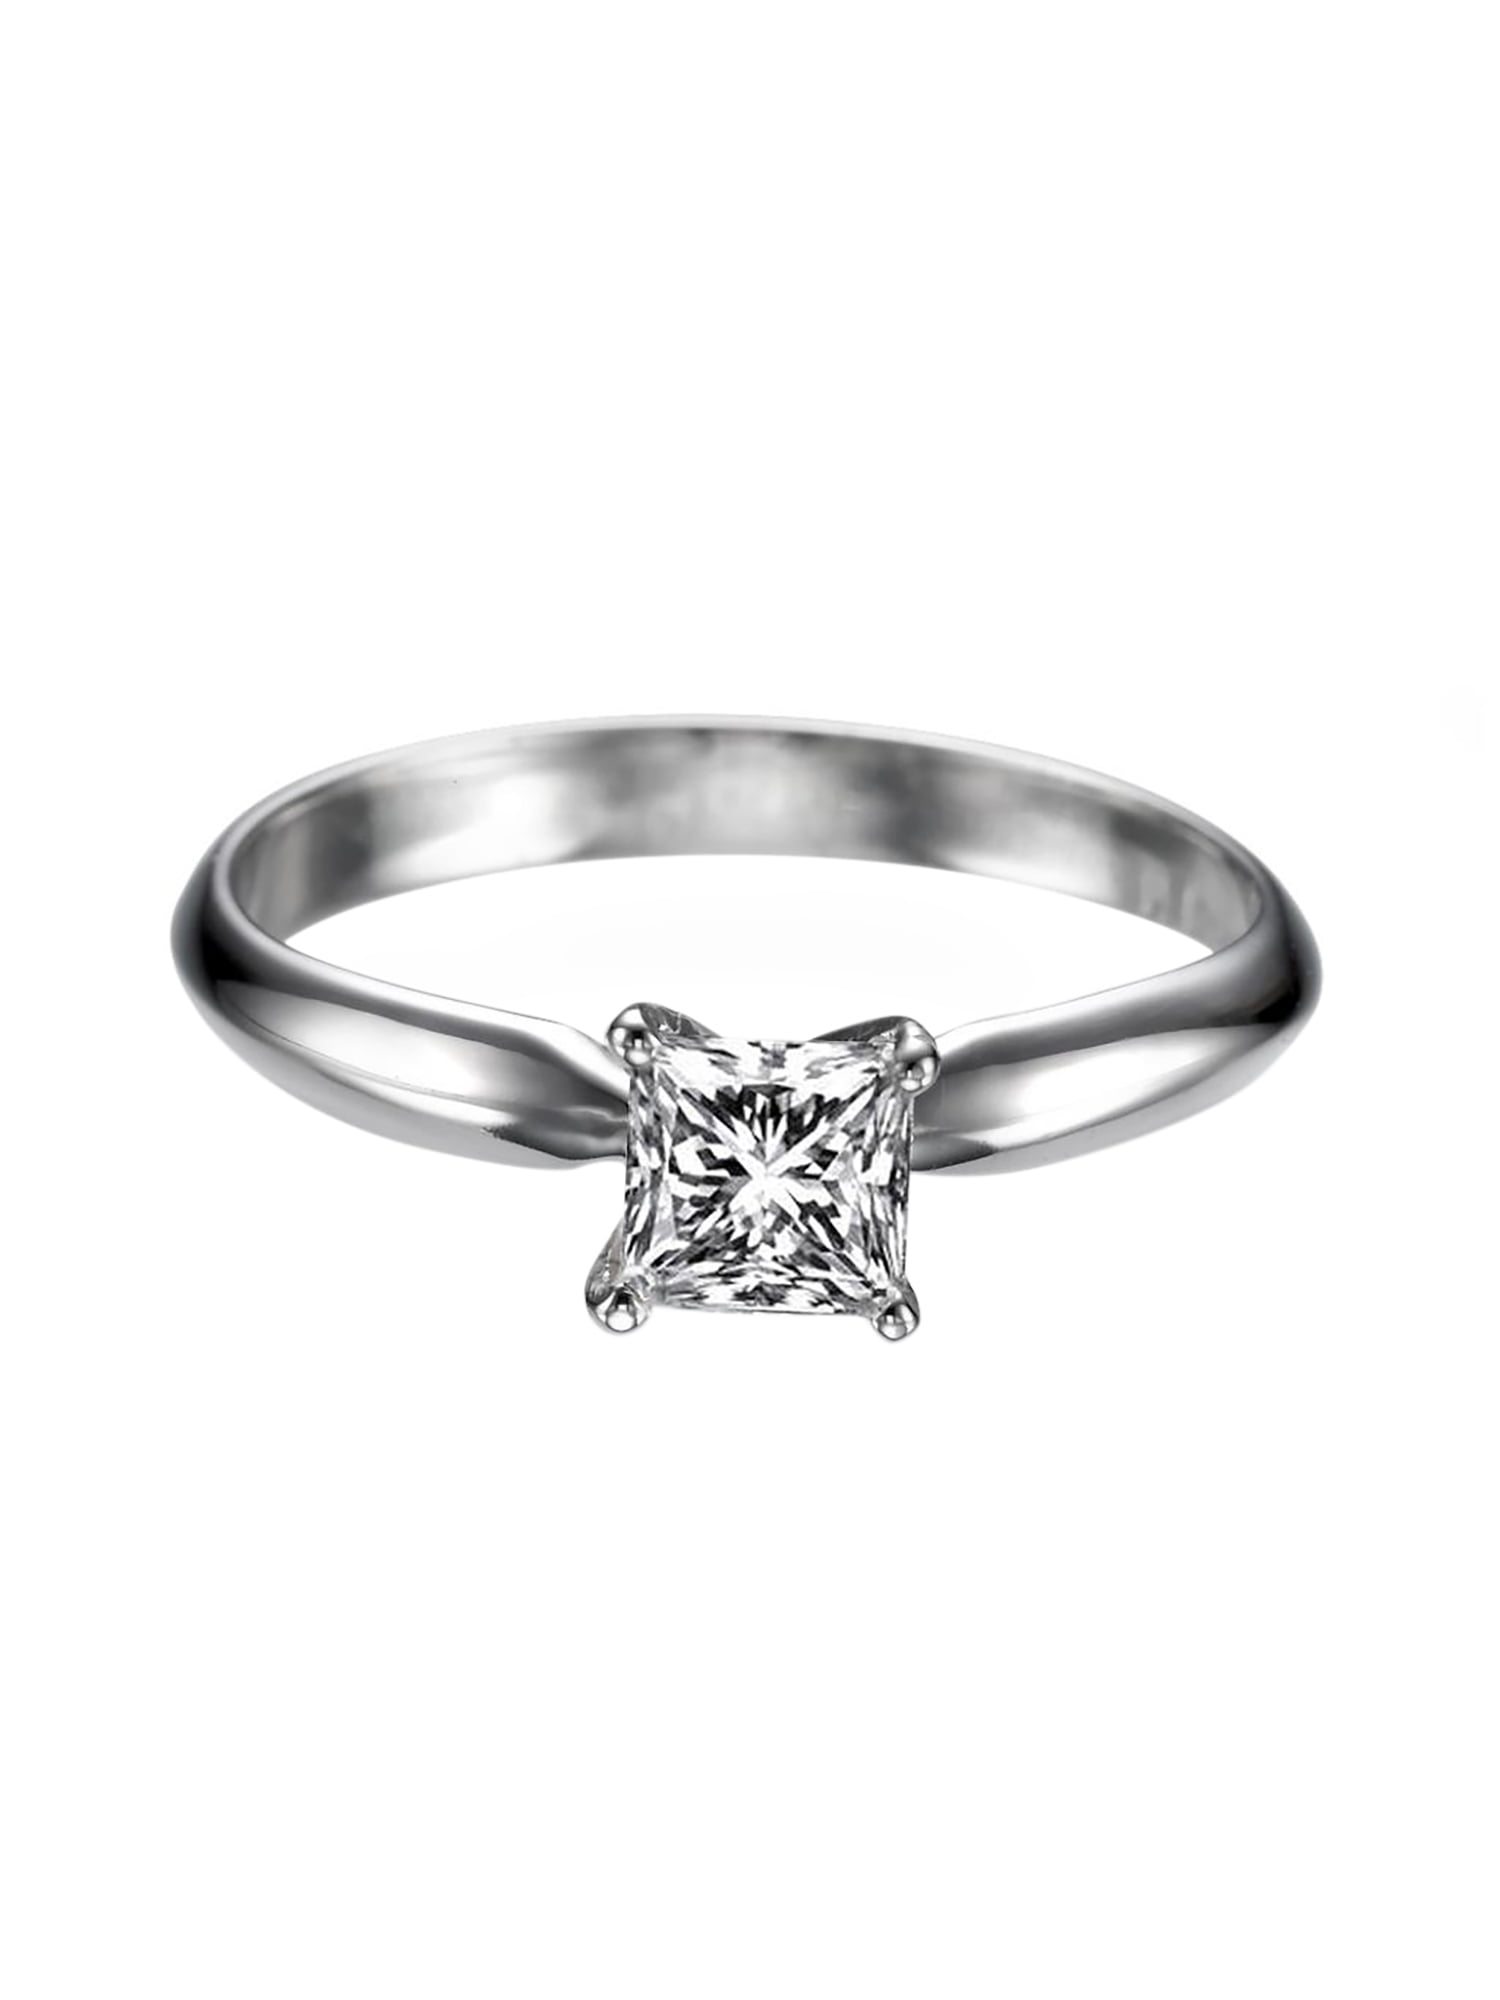 Details about   1.66 Princess Blue Stone Promise Bridal Wedding Designer Ring 14k Rose Gold 